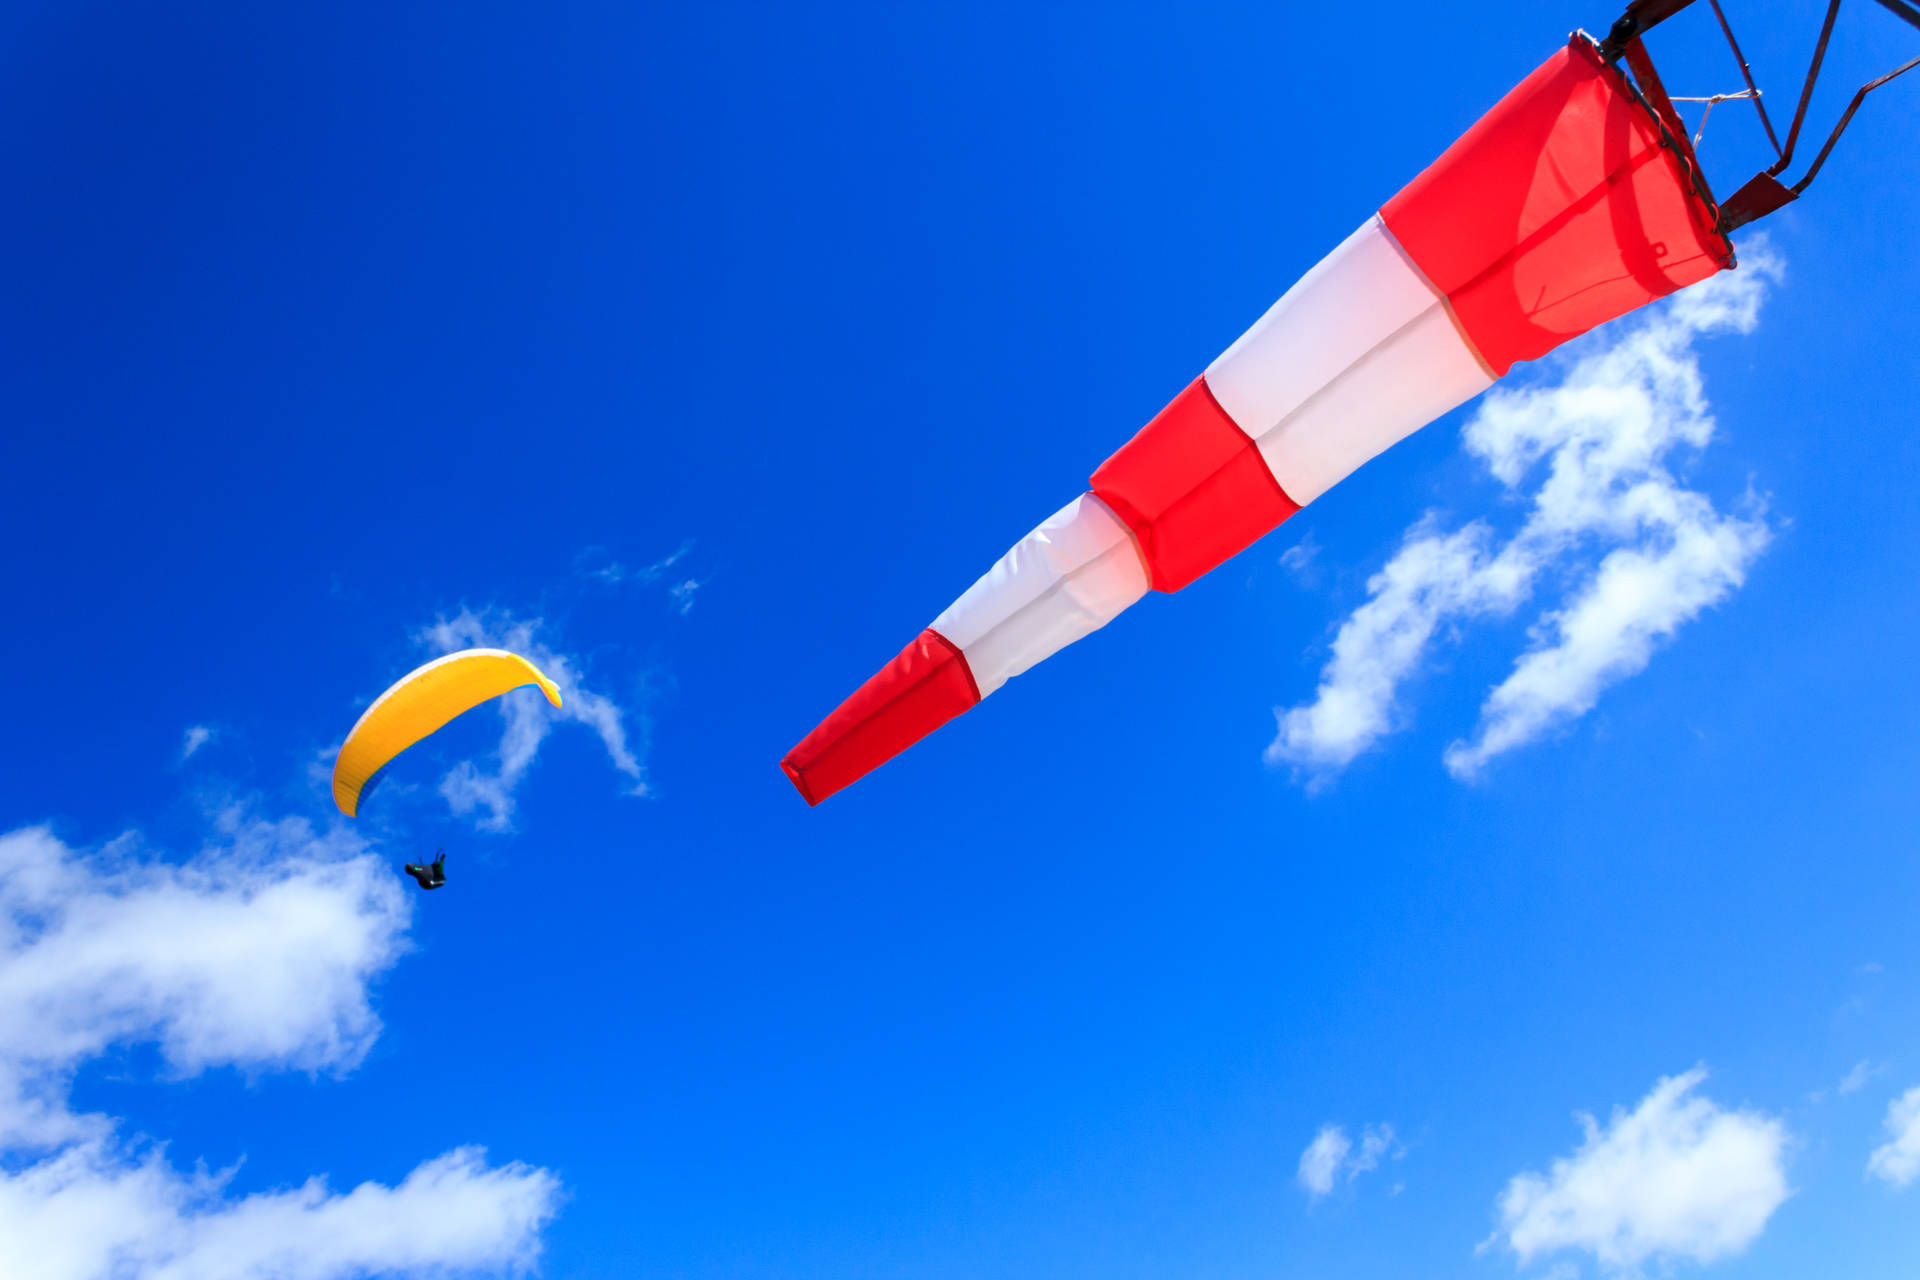 Paraglidingin Der Nähe Eines Windanzeige-flags Wallpaper